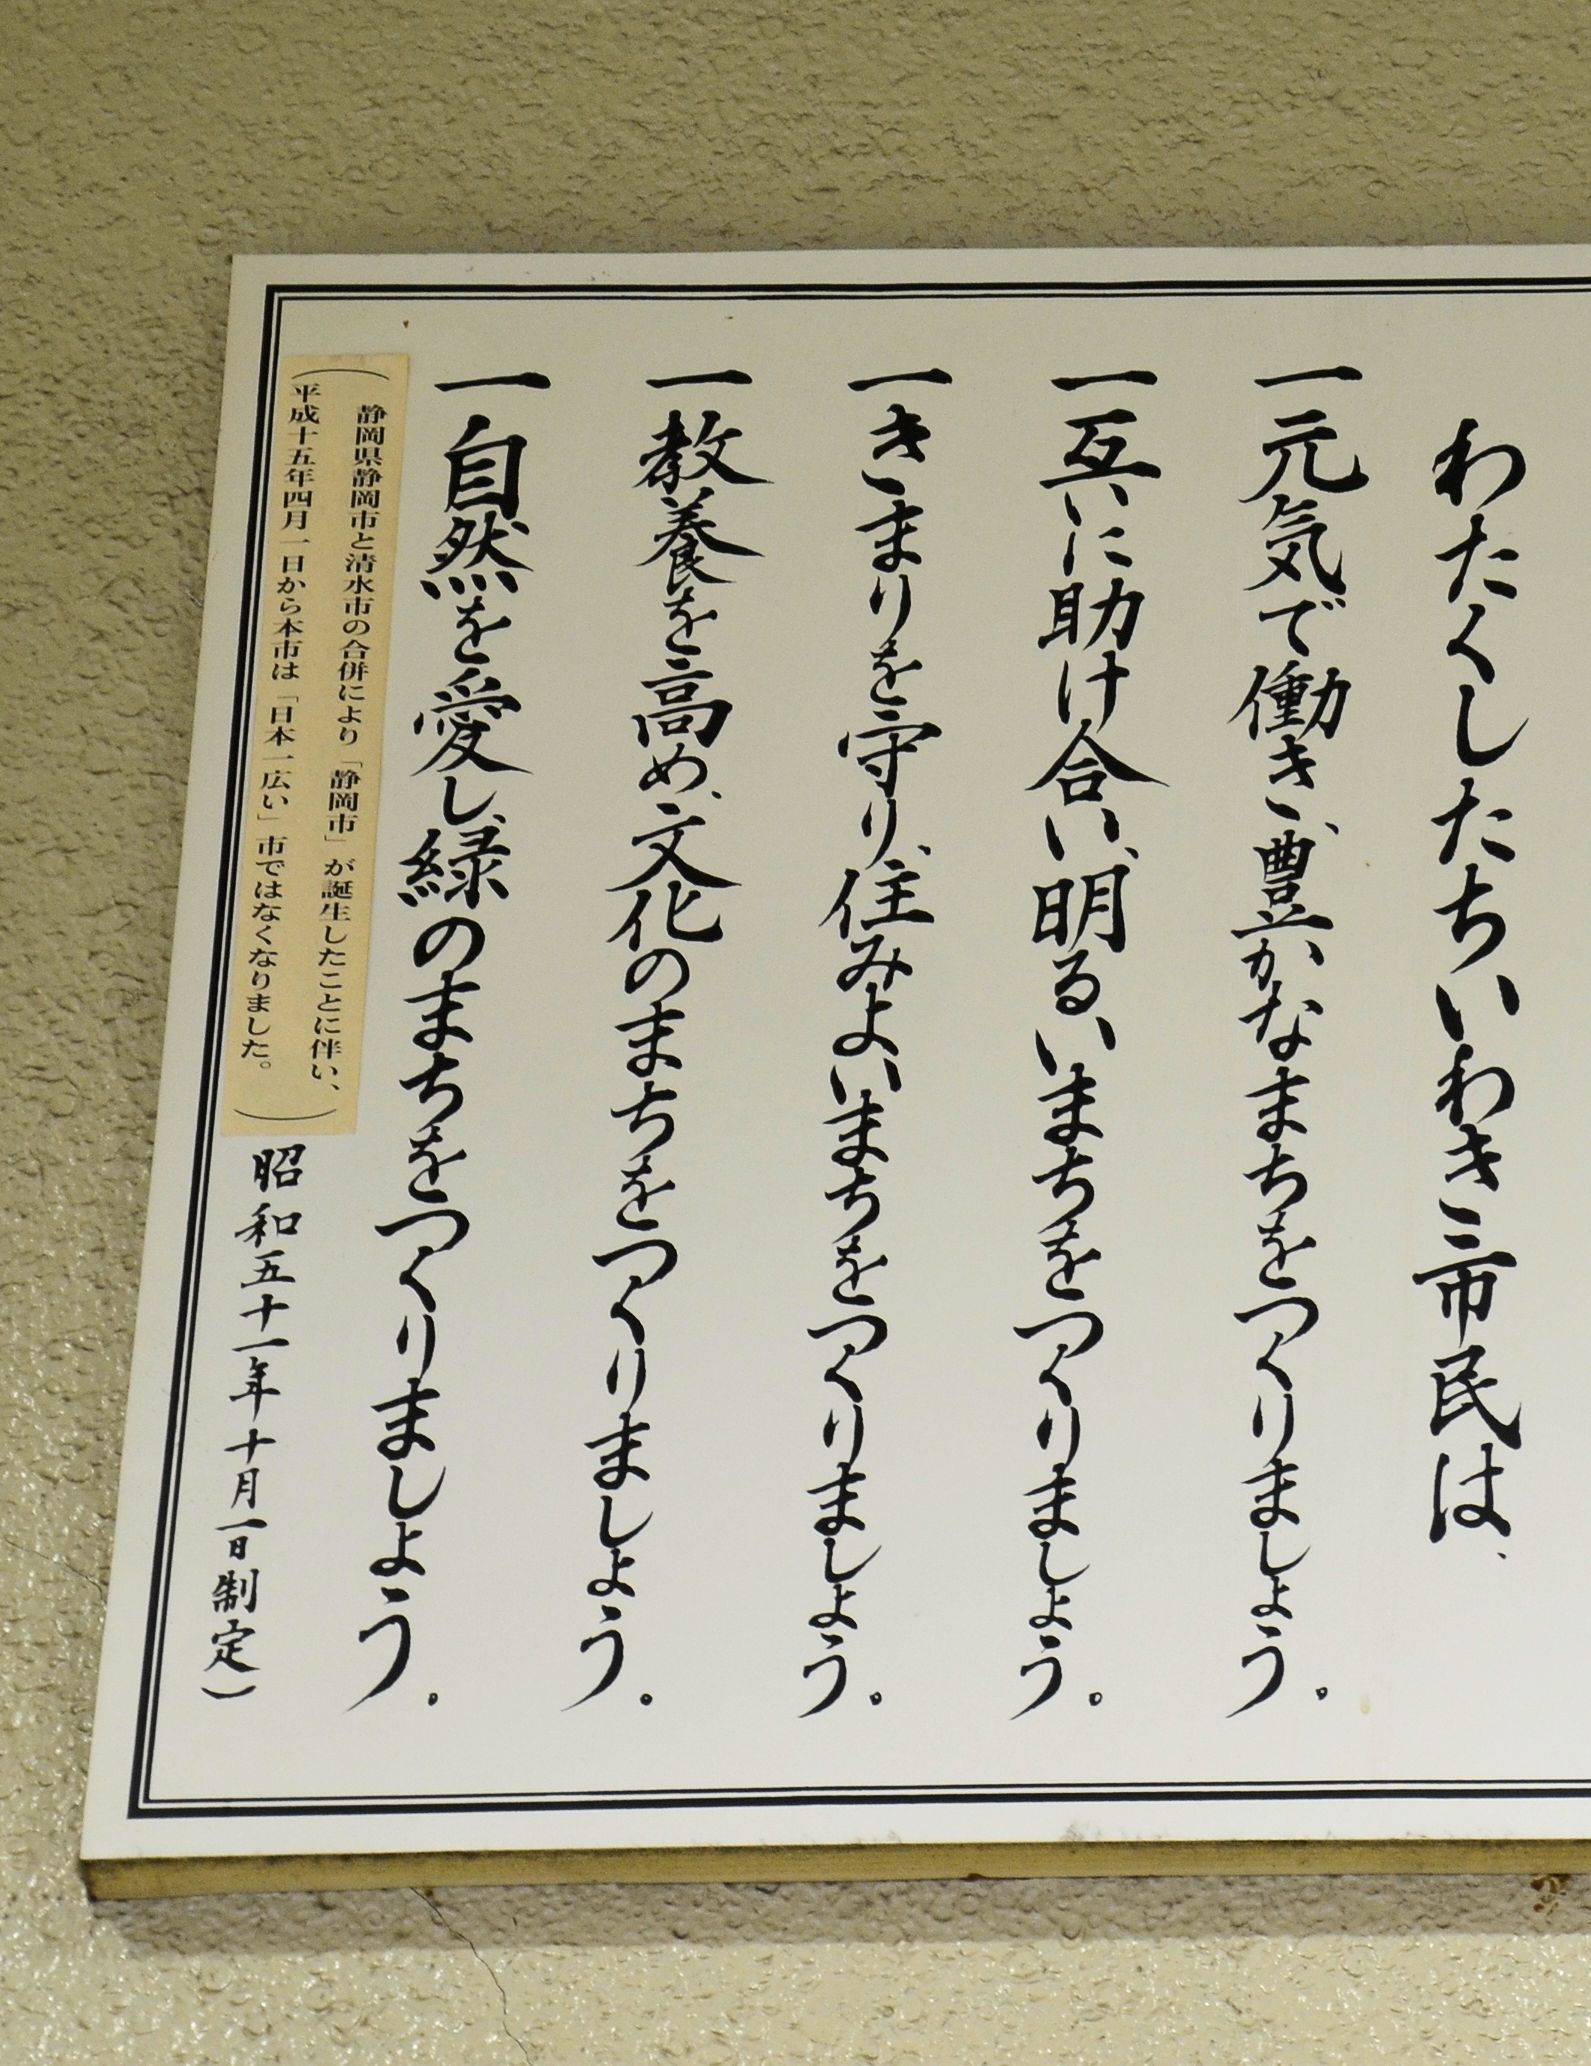 05憲章表示板左上の「日本一広い…」の現状を説明するステッカー